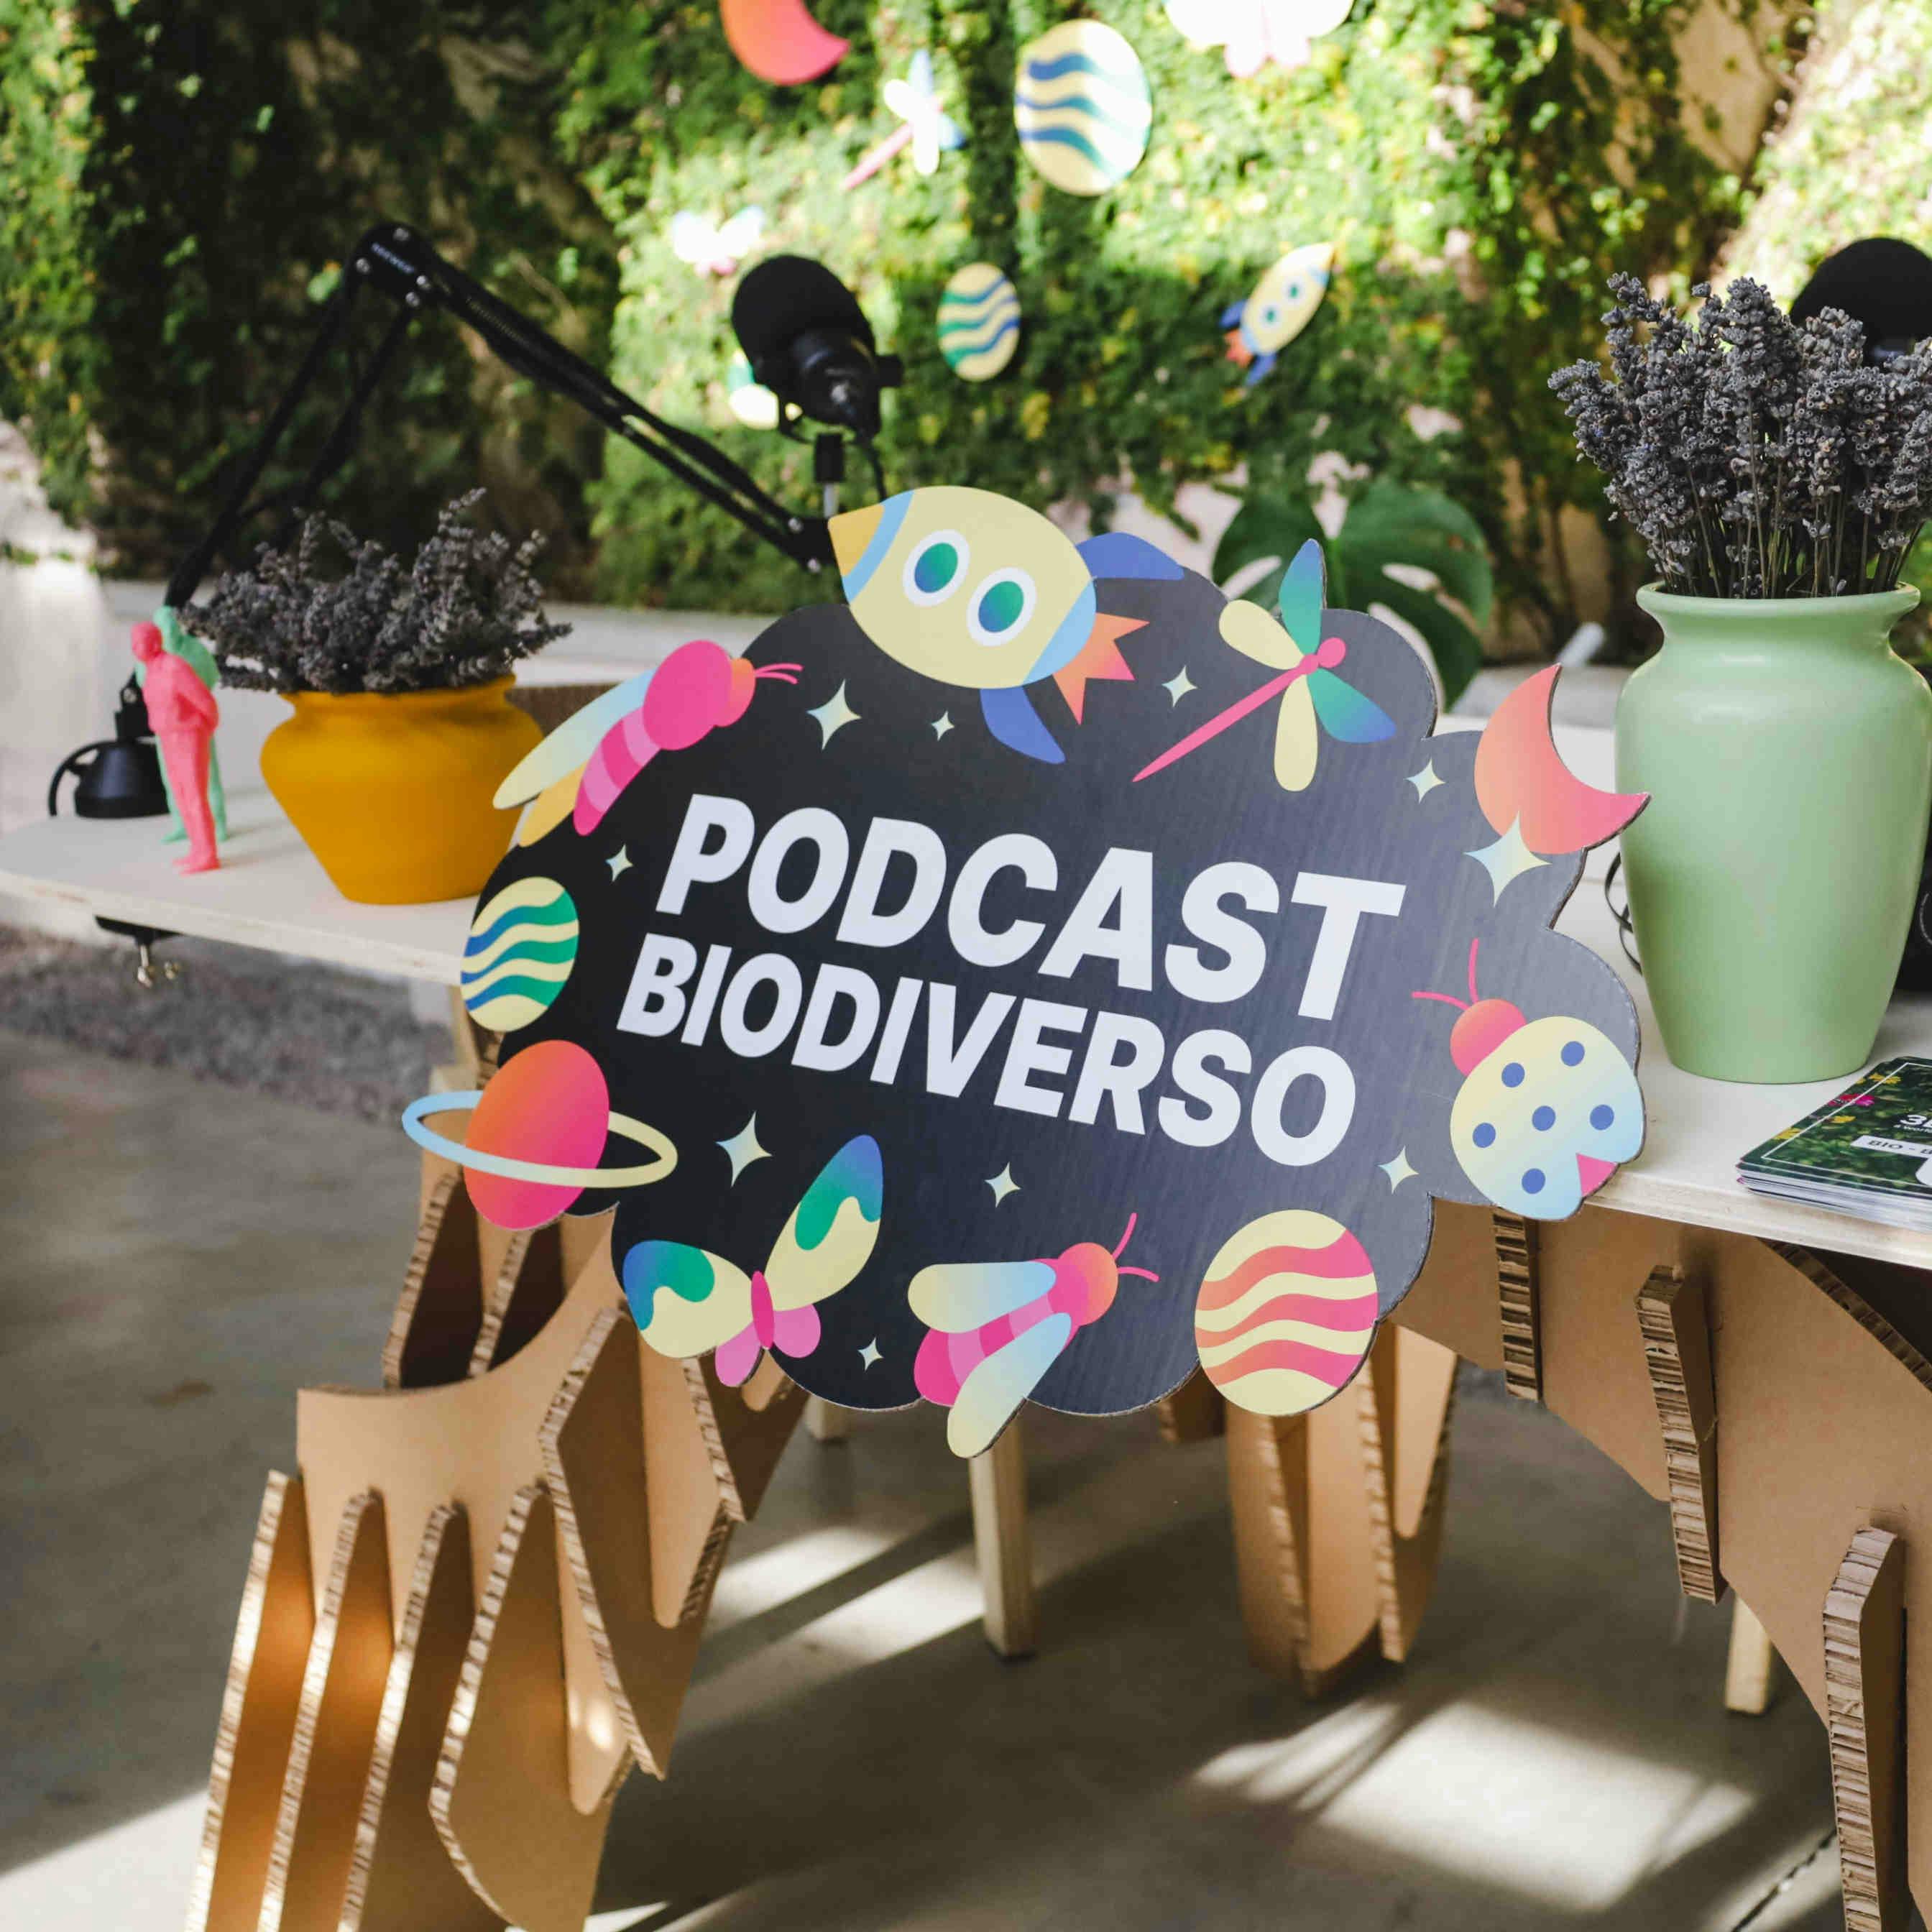 Podcast Biodiverso: le puntate e gli ospiti